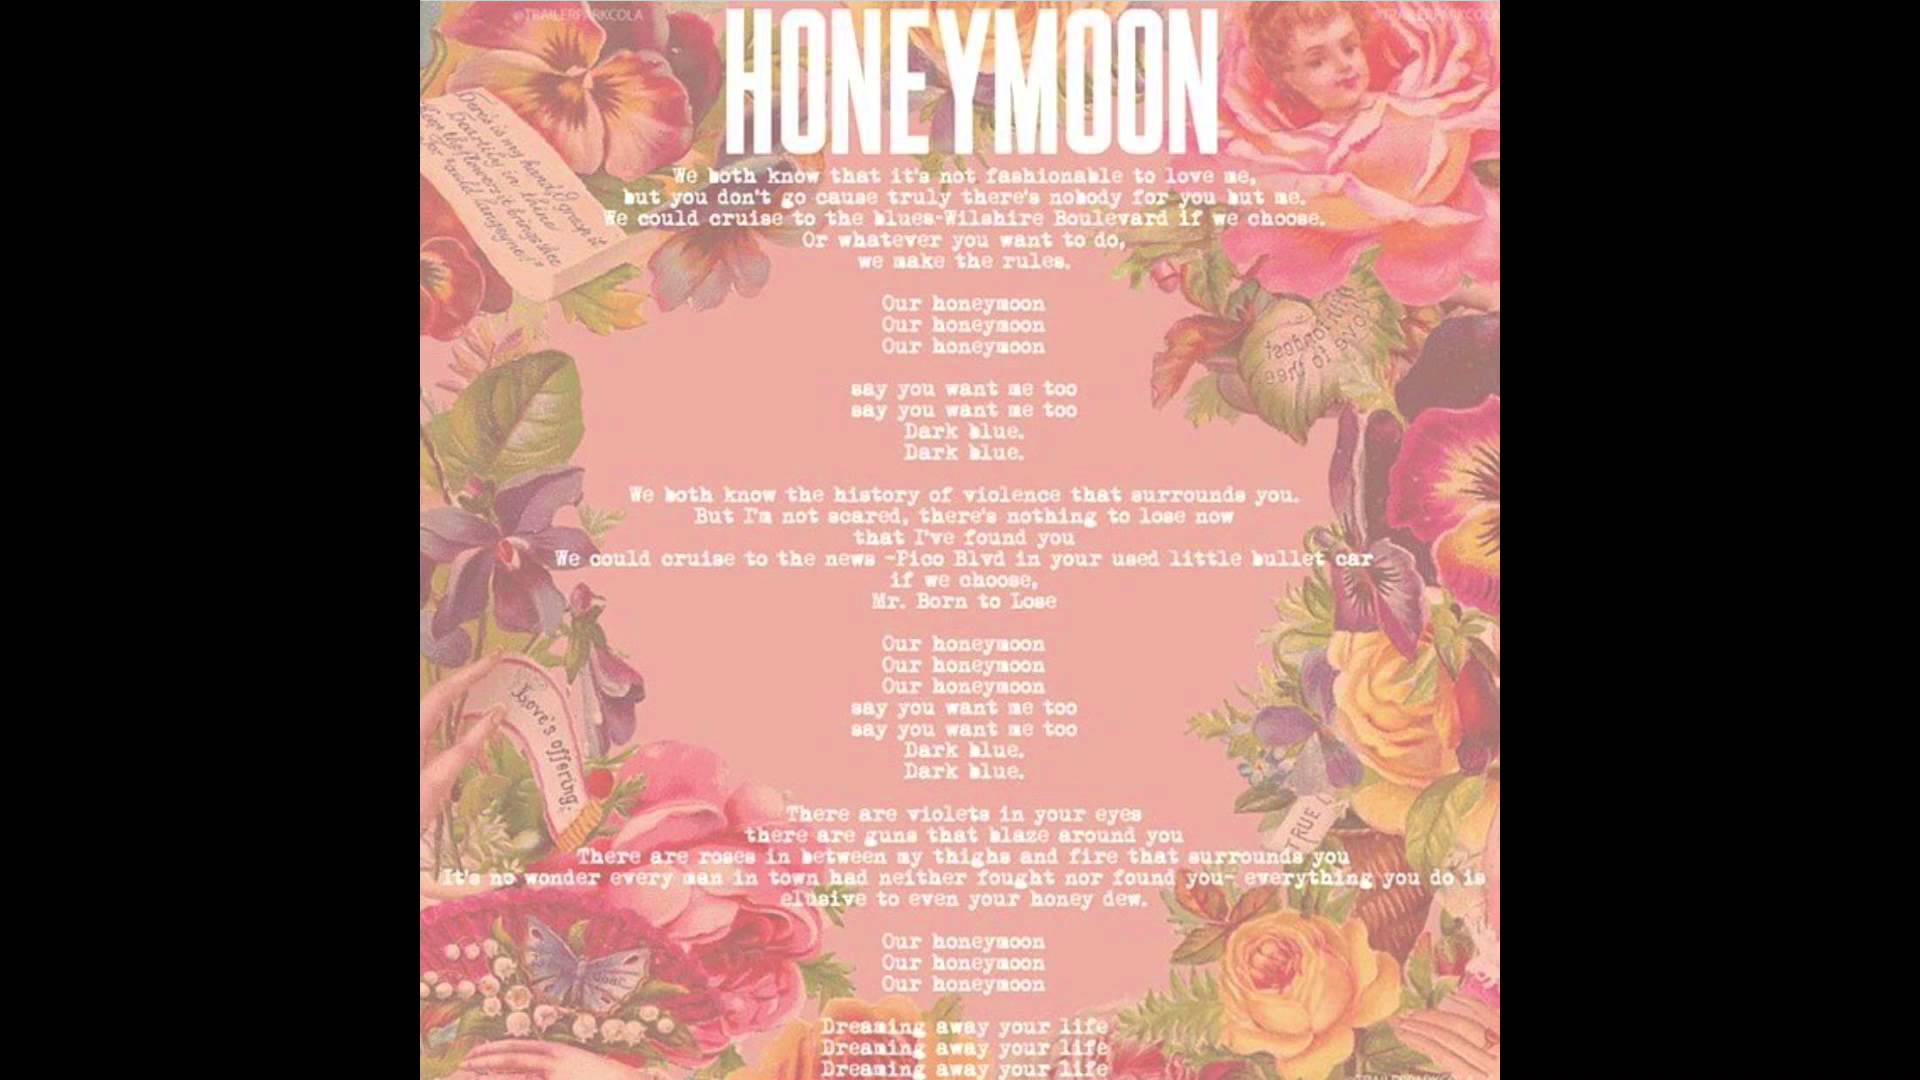 Lana Del Rey – “Honeymoon” (Audio)